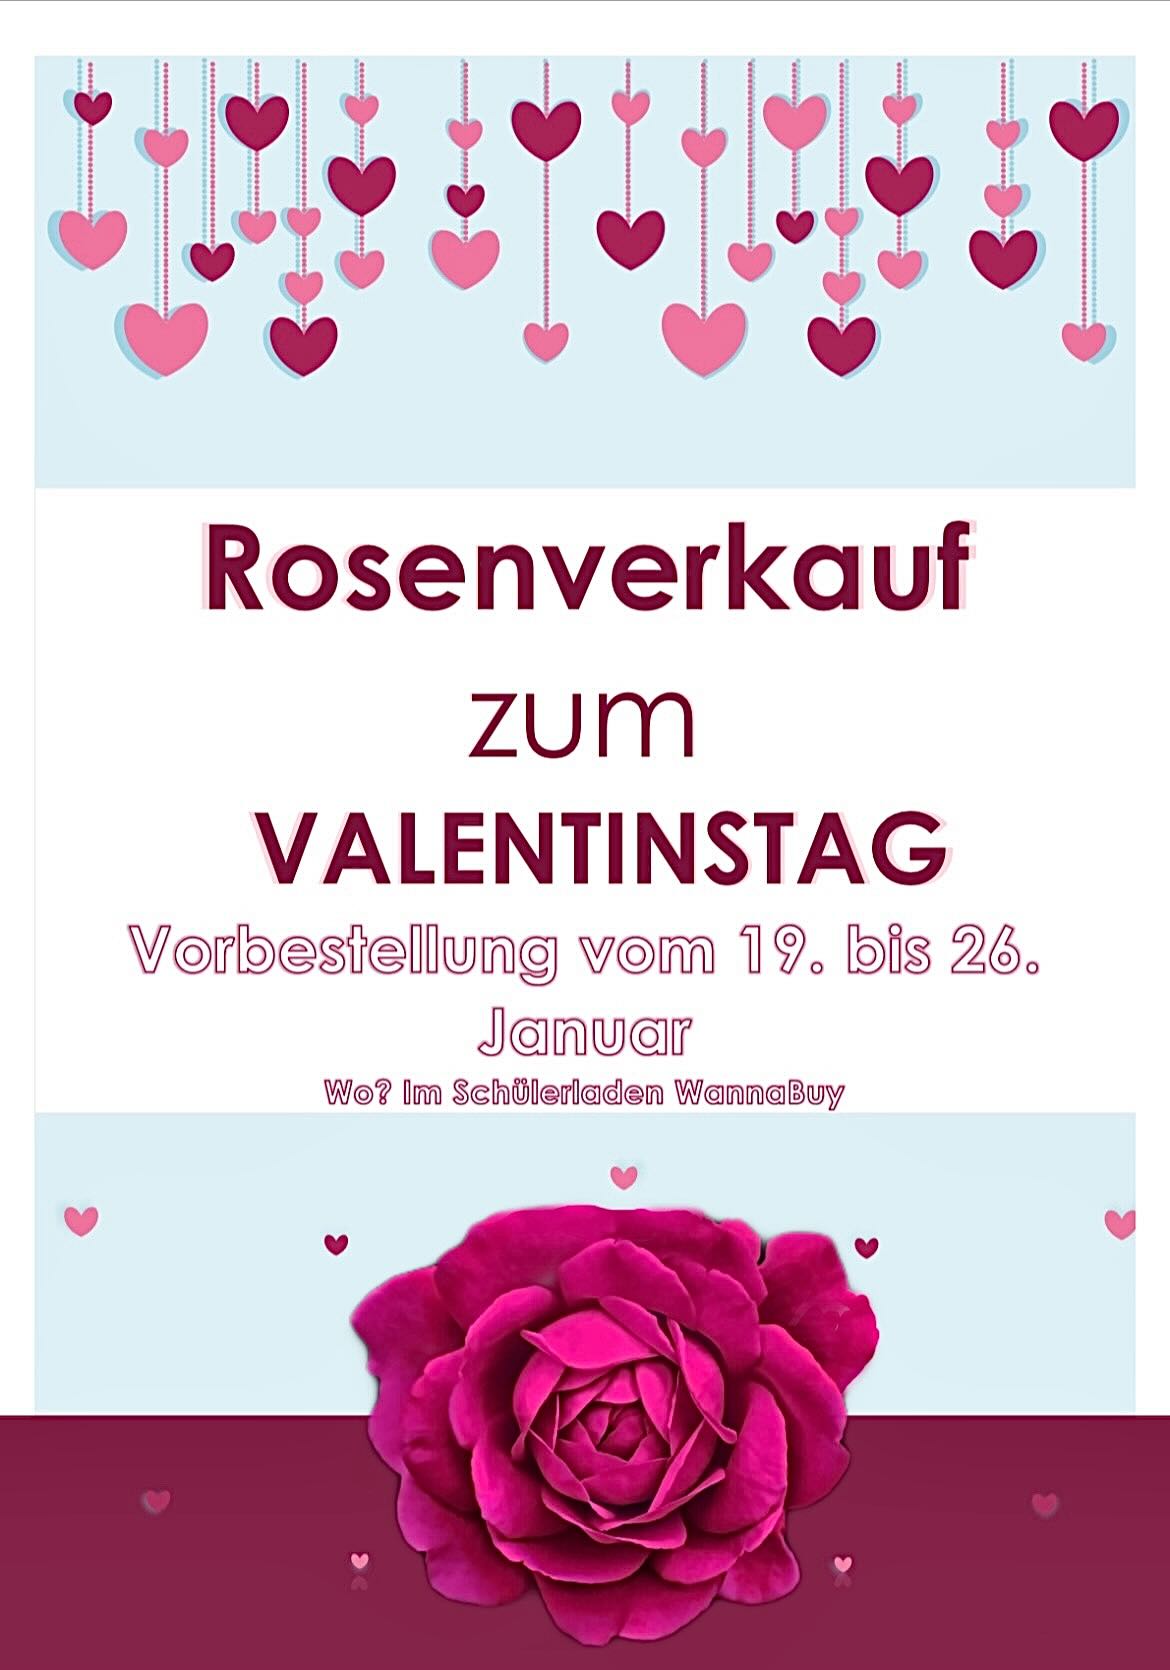 Ein Flyer mit Rosen als Einladung zur Rosenaktion und Vorgehensweise, wie man diese bestellen kann.